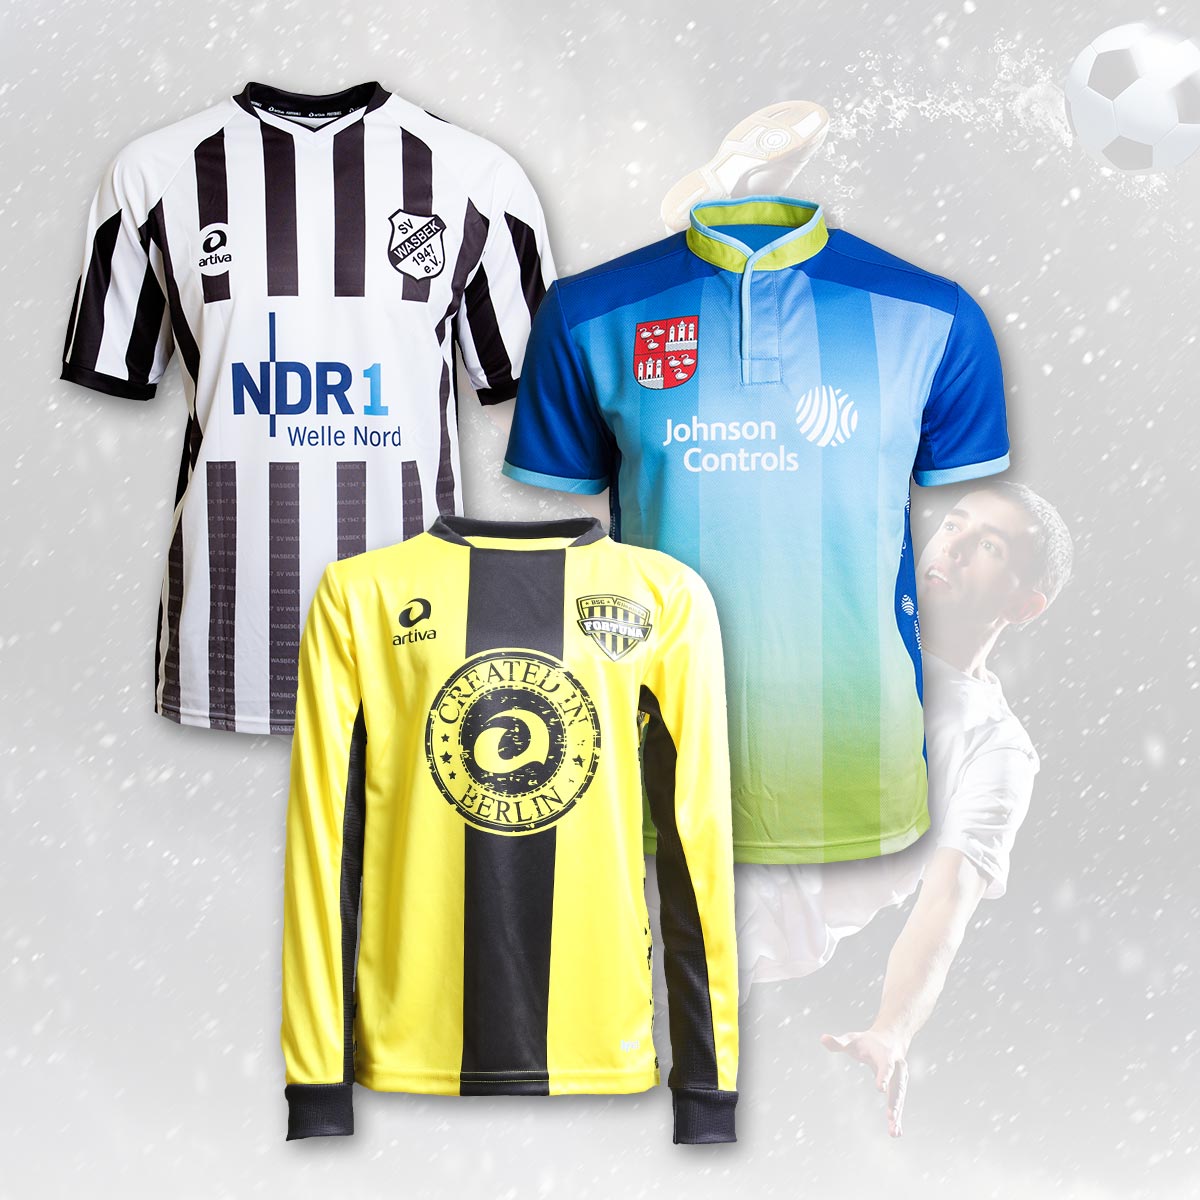 Unsere Fußball/Handball-Produkte